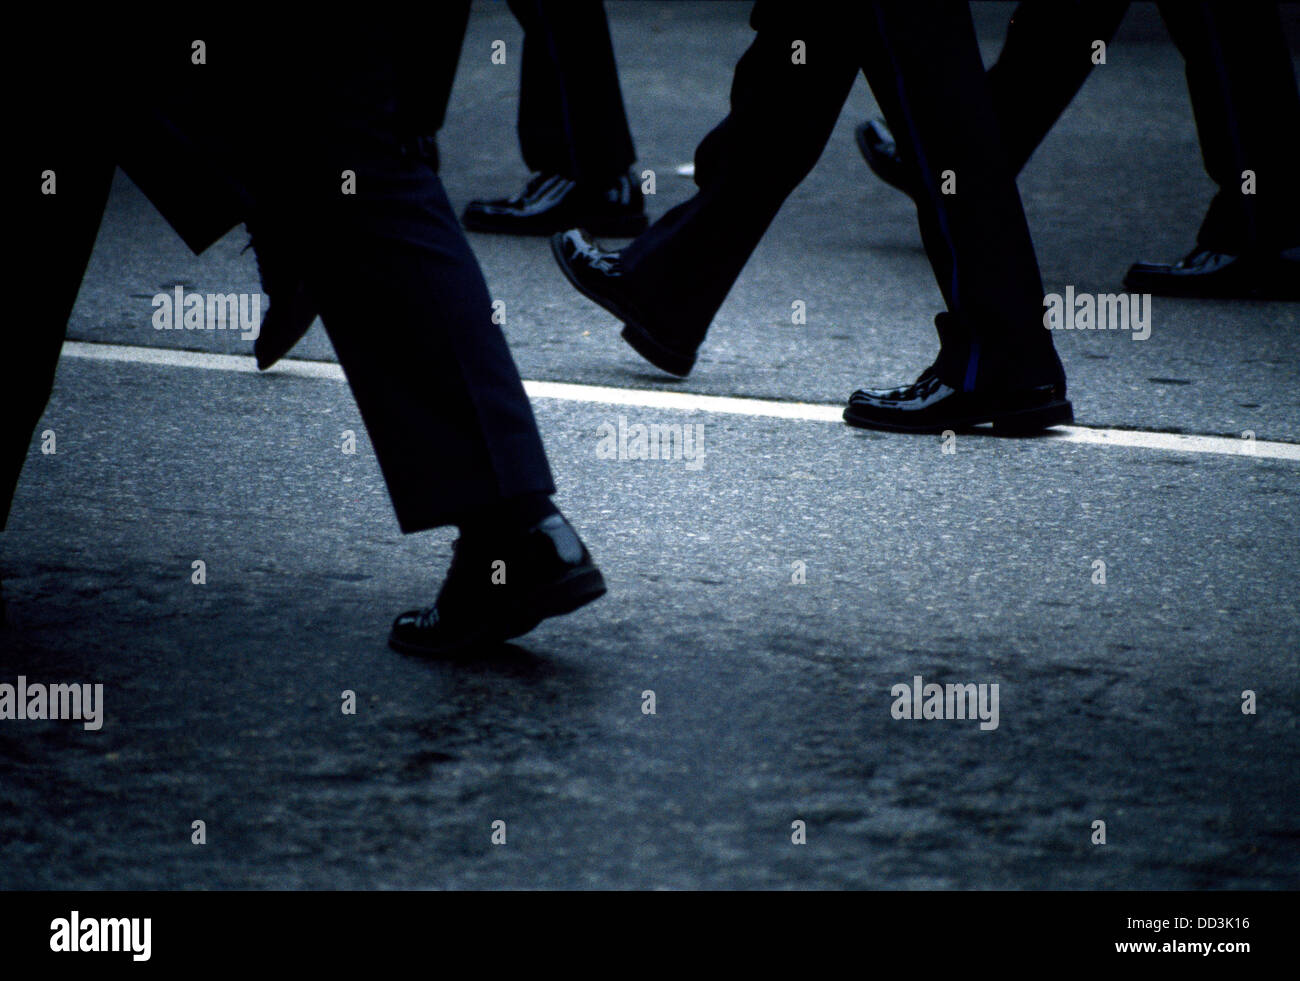 Molti colorati di nero gambe e scarpe in marcia su una strada con una linea bianca. Foto Stock